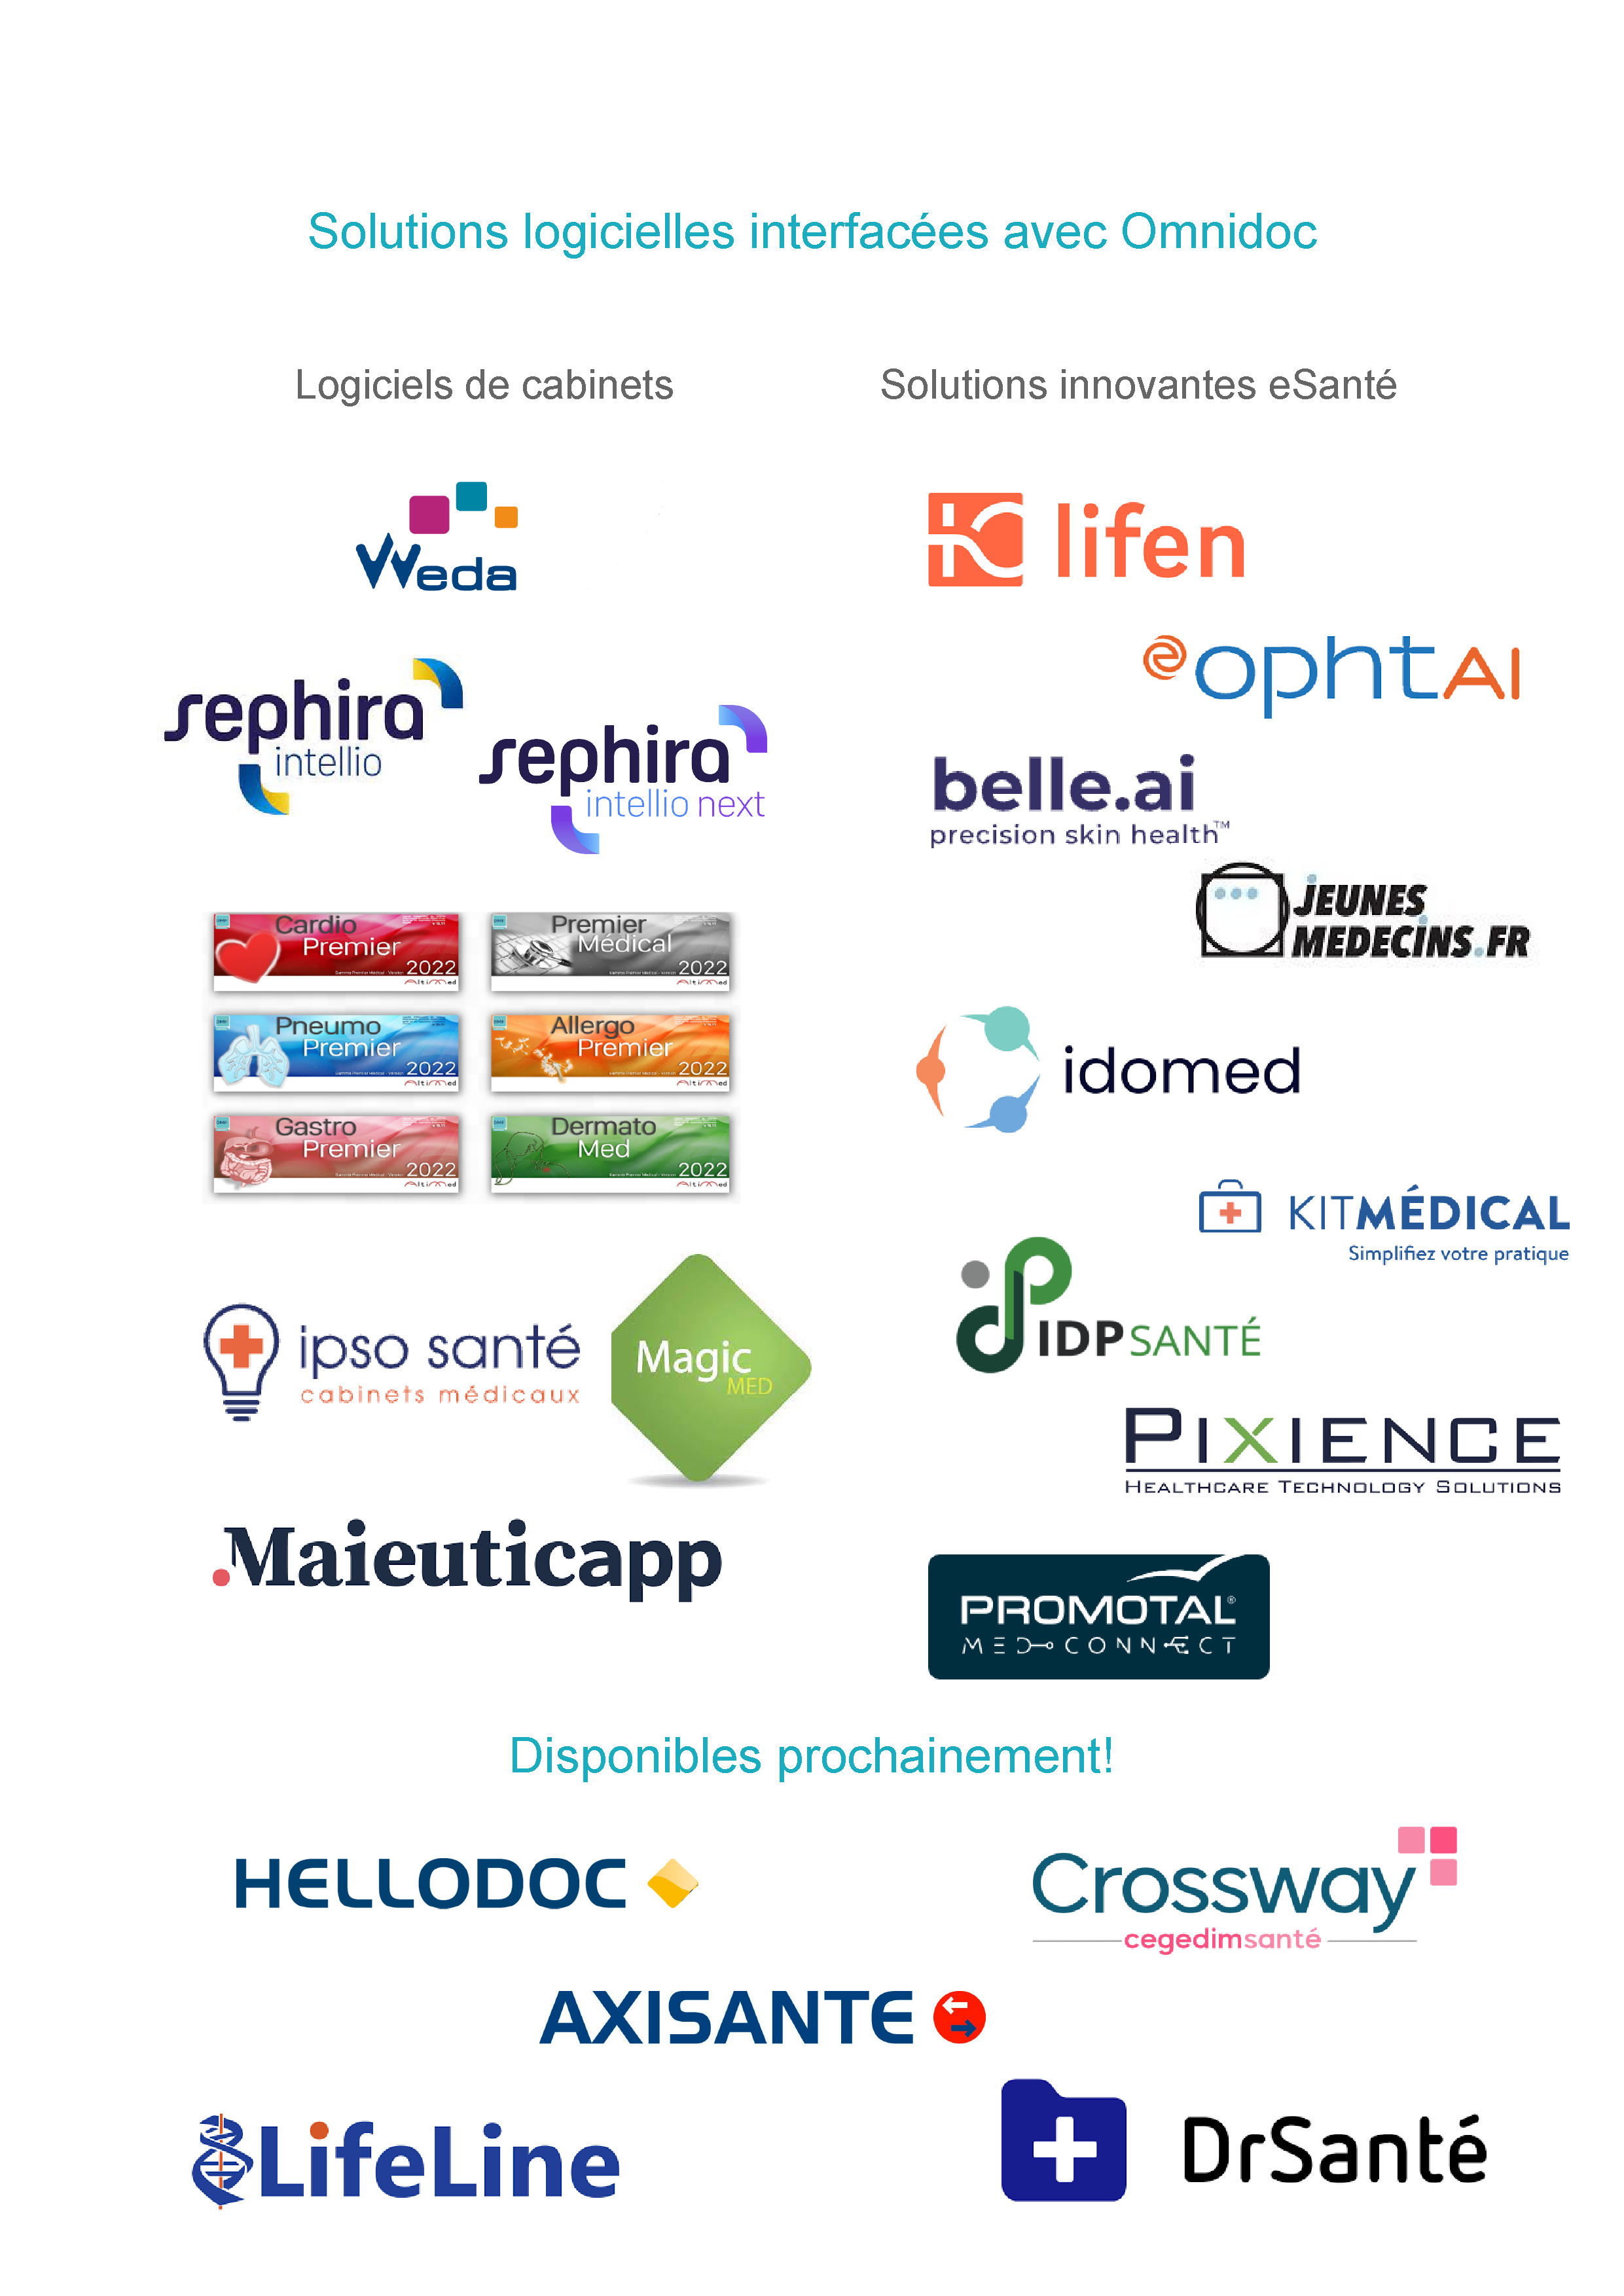 Liste des logiciels partenaires omnidoc